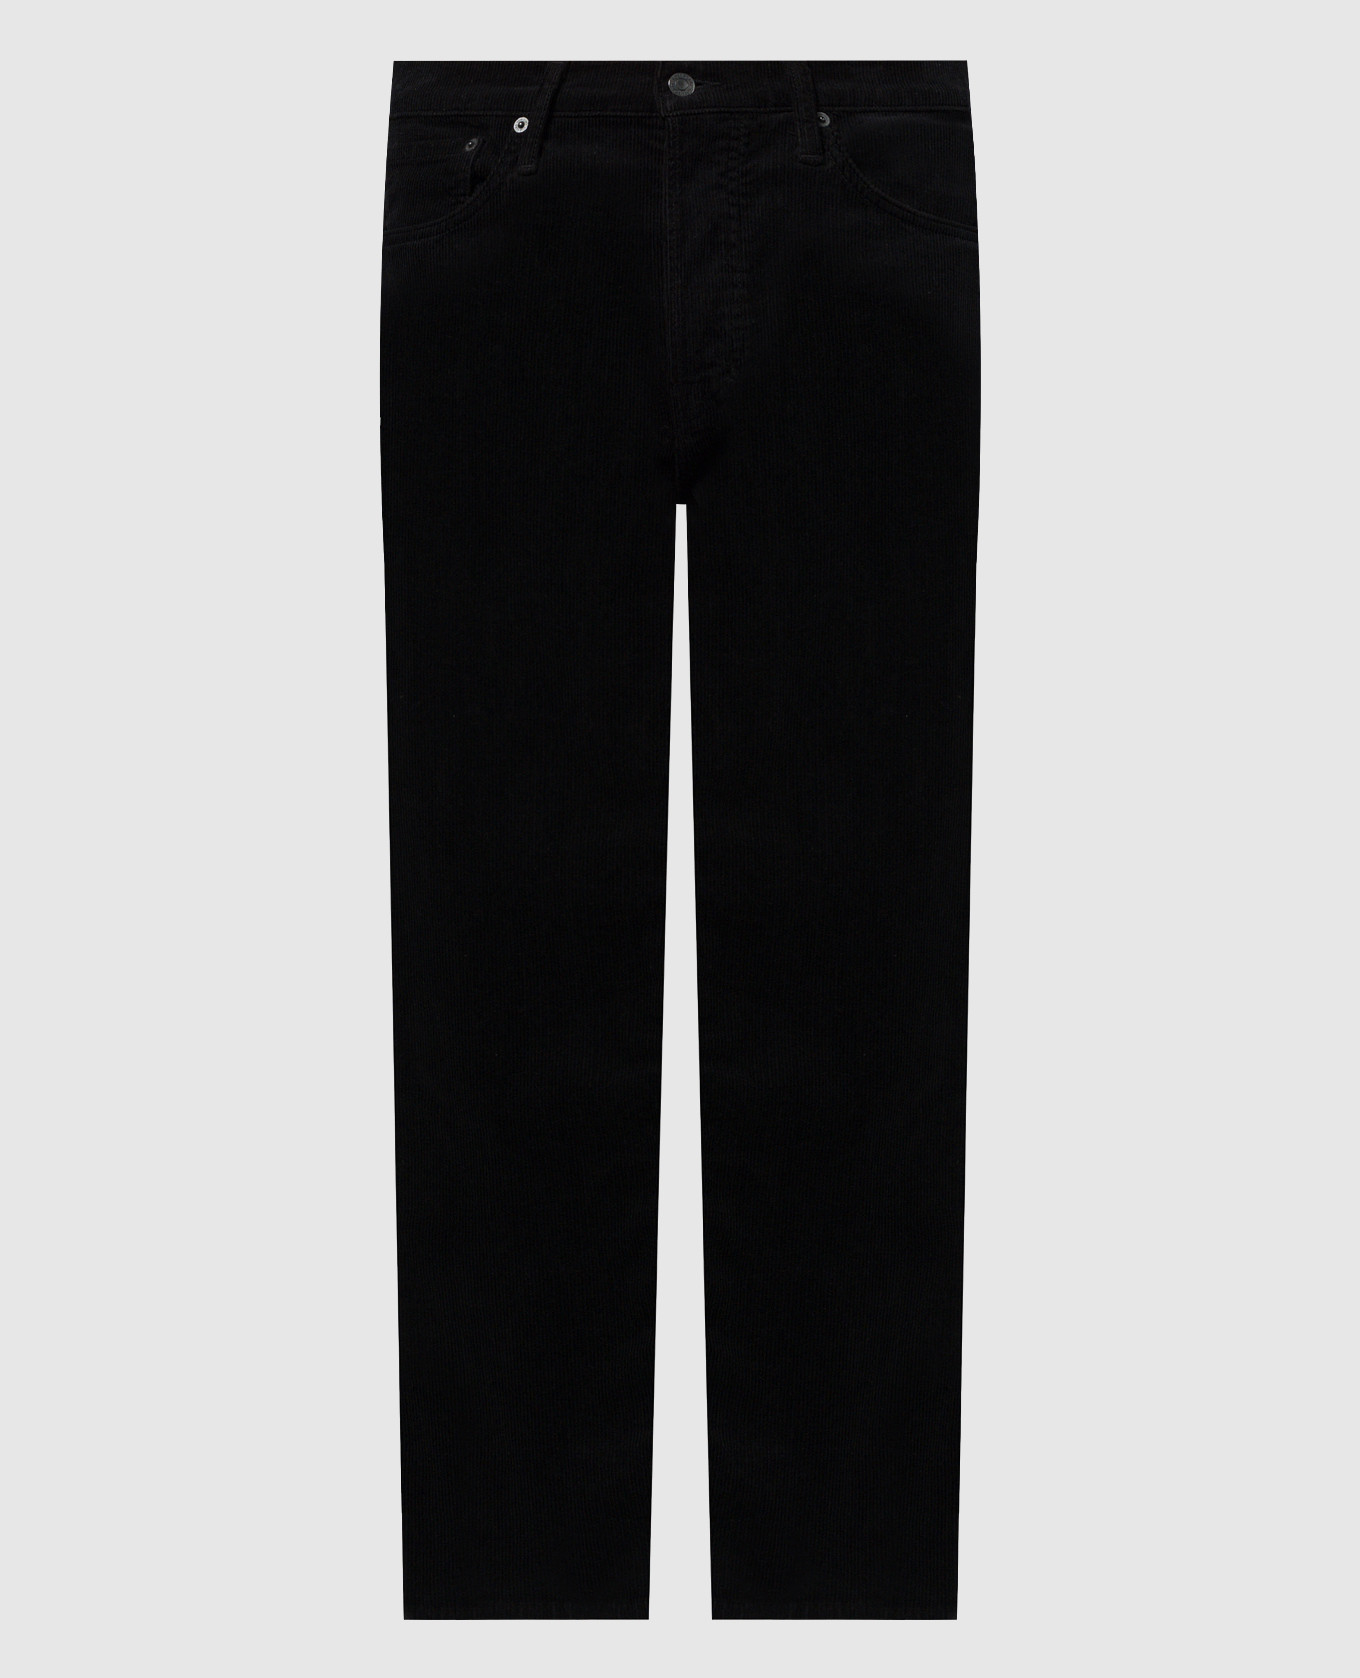 Black corduroy pants